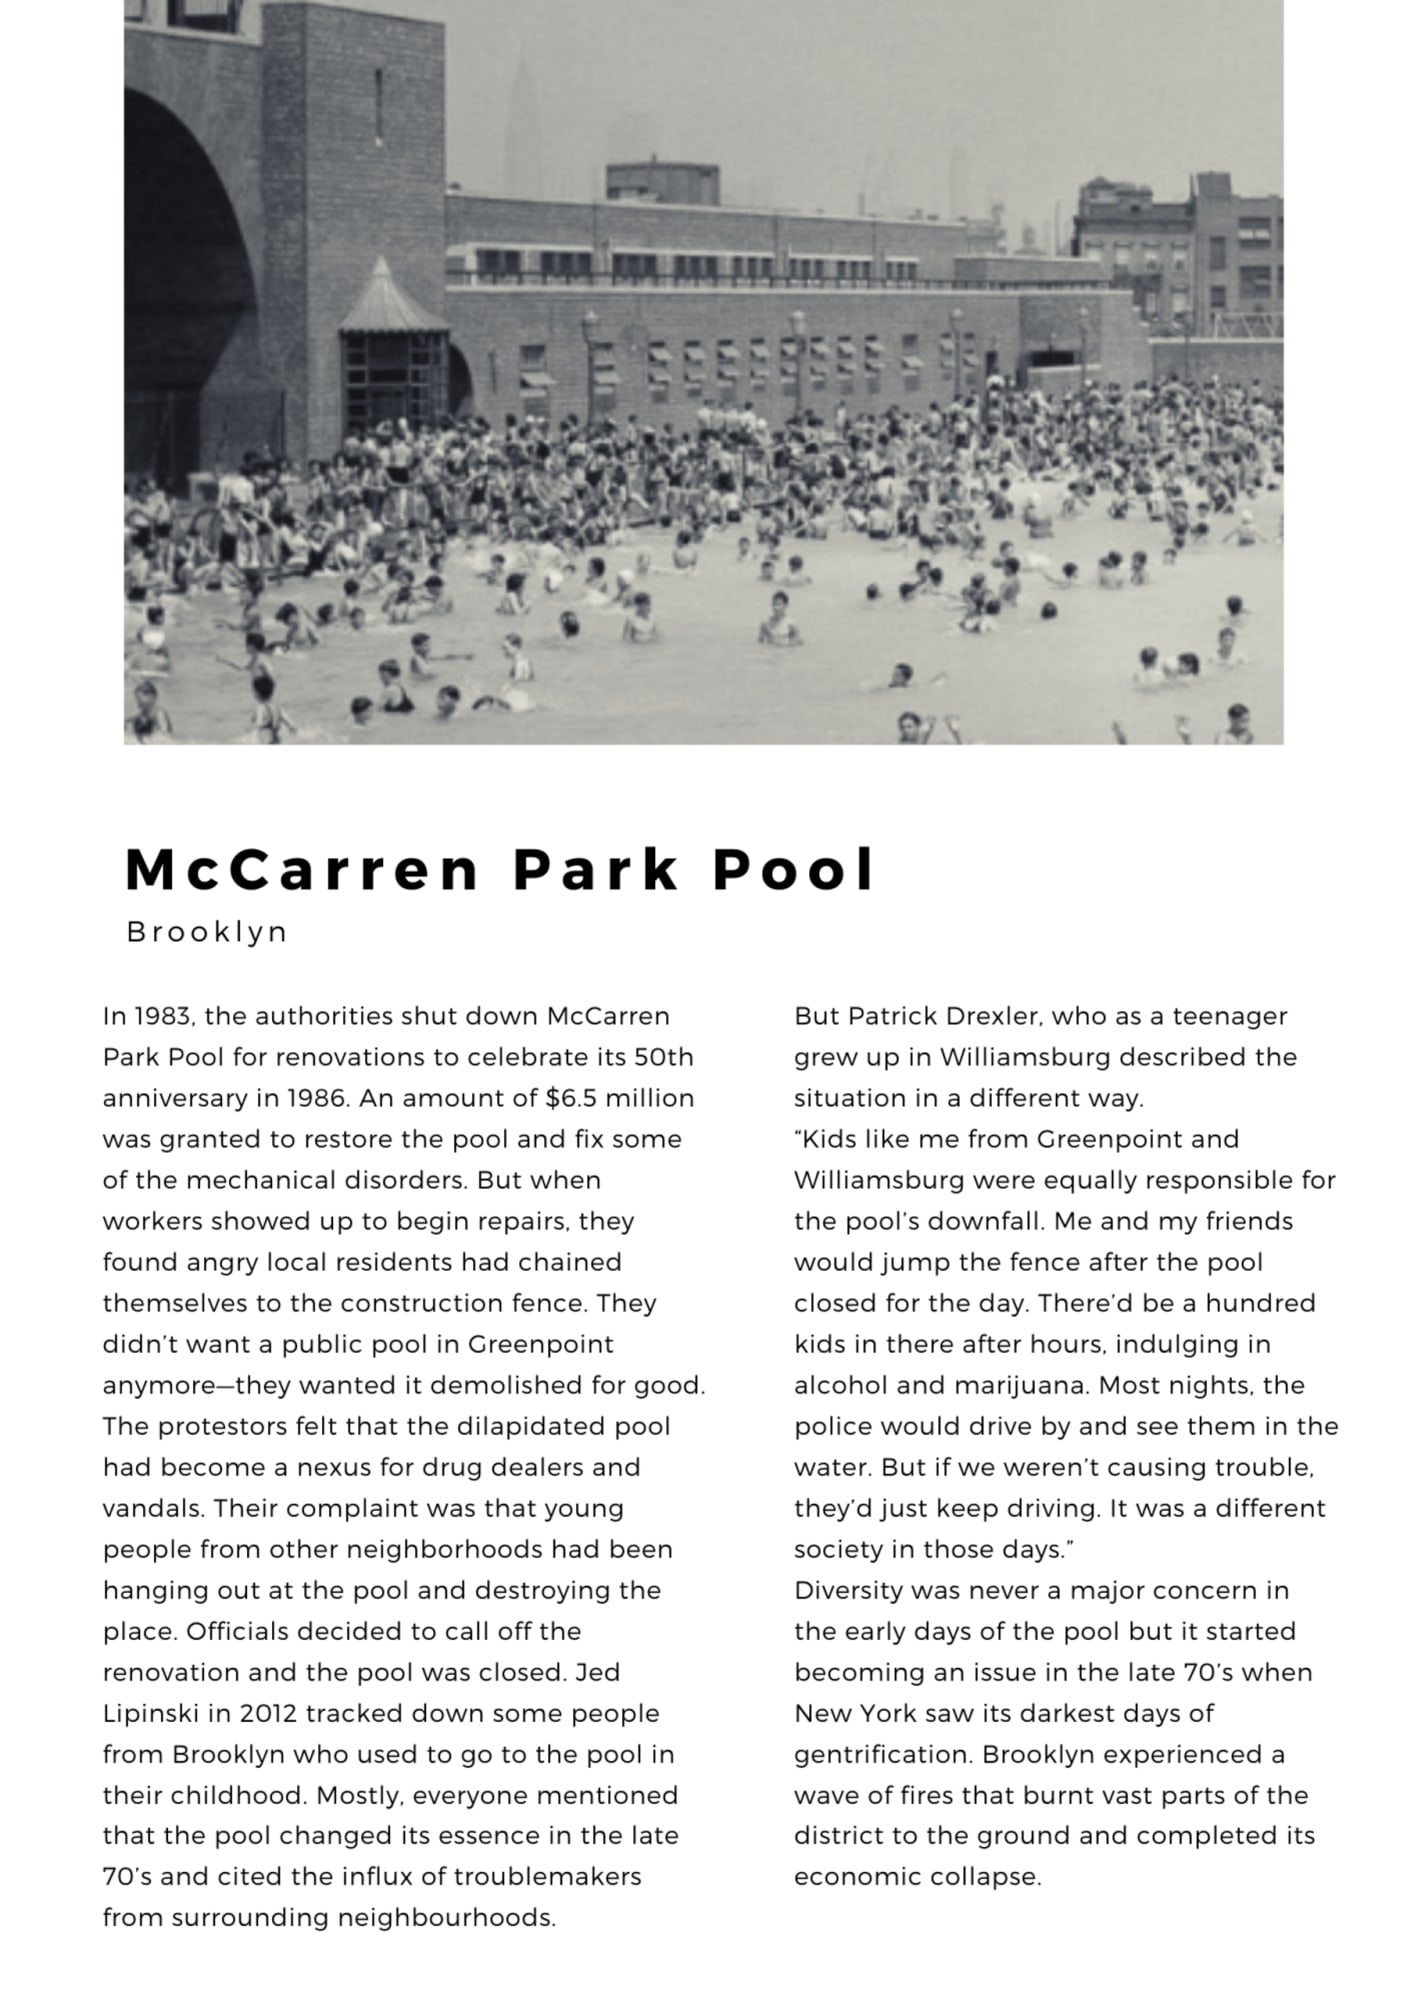 Image: McCarren Park Pool in 1938